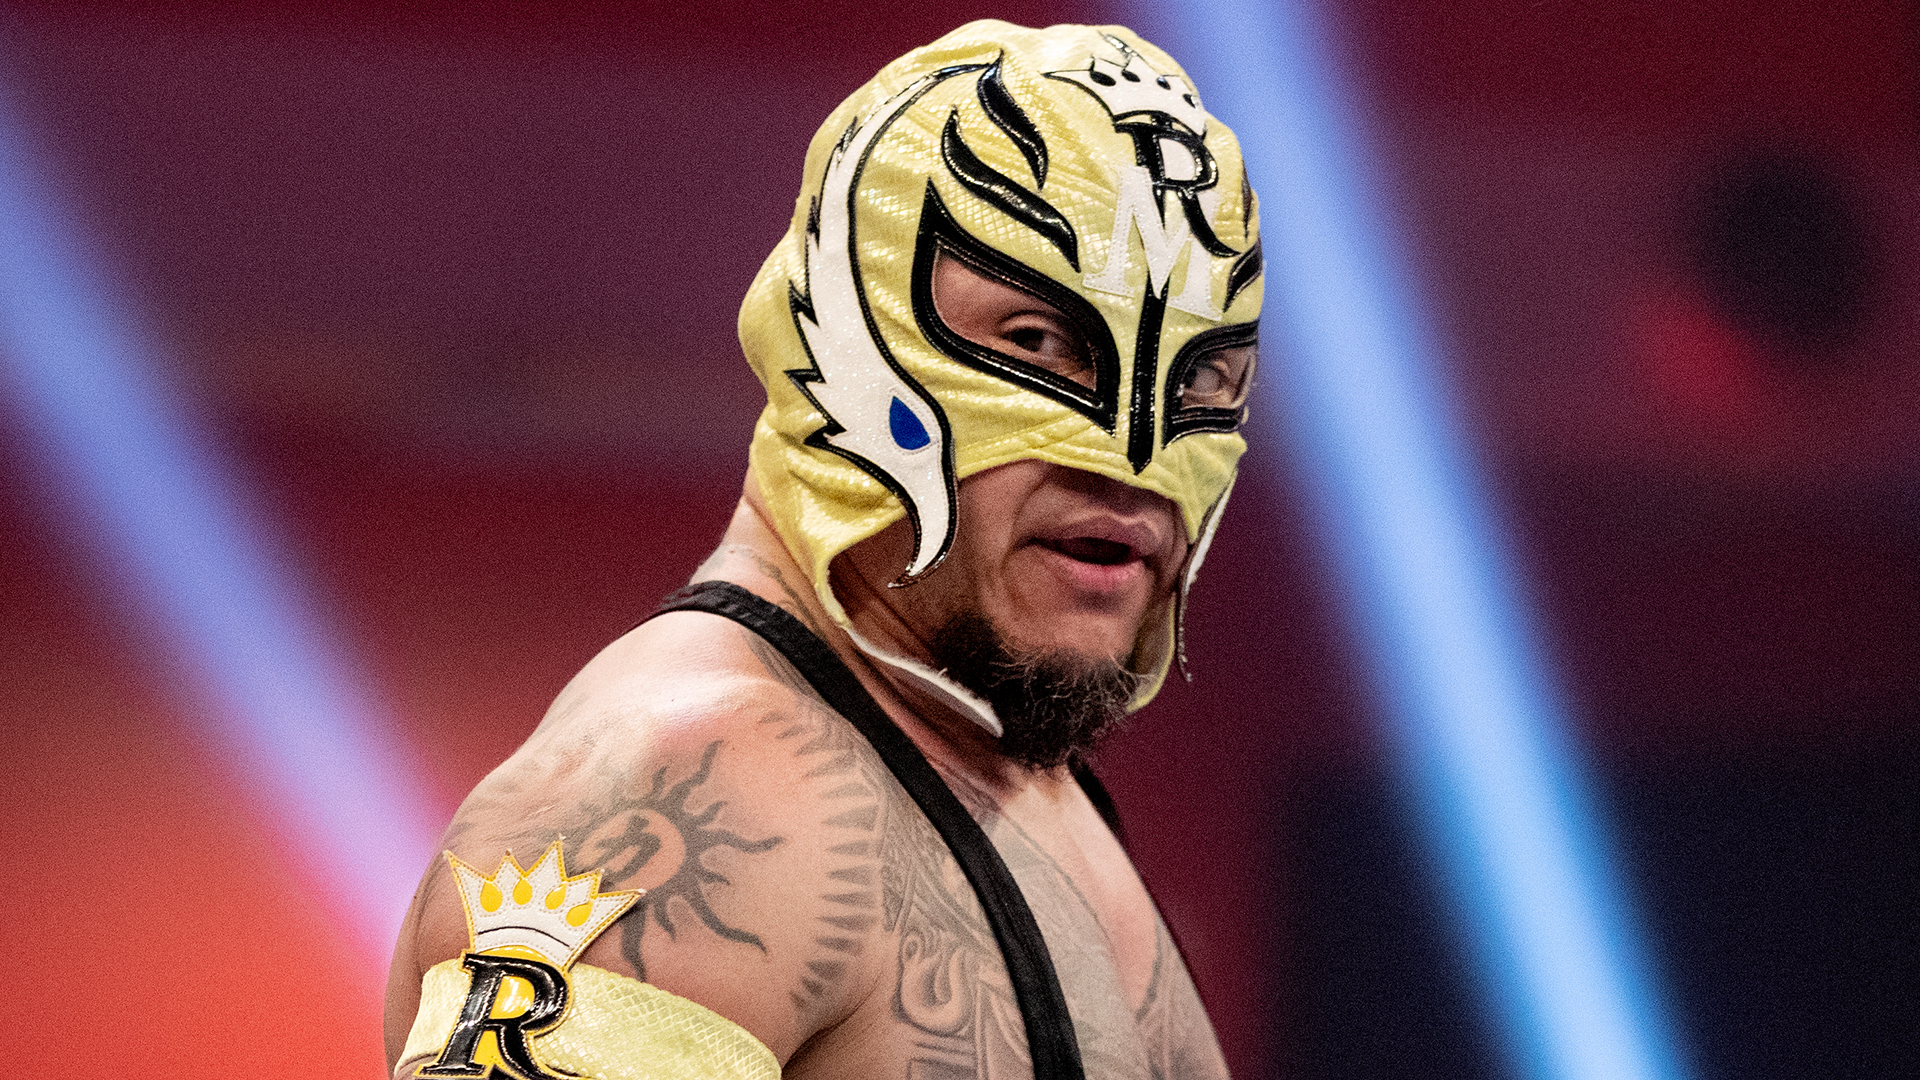 WWE Altro che addio, Rey Mysterio ha rinnovato il suo contratto